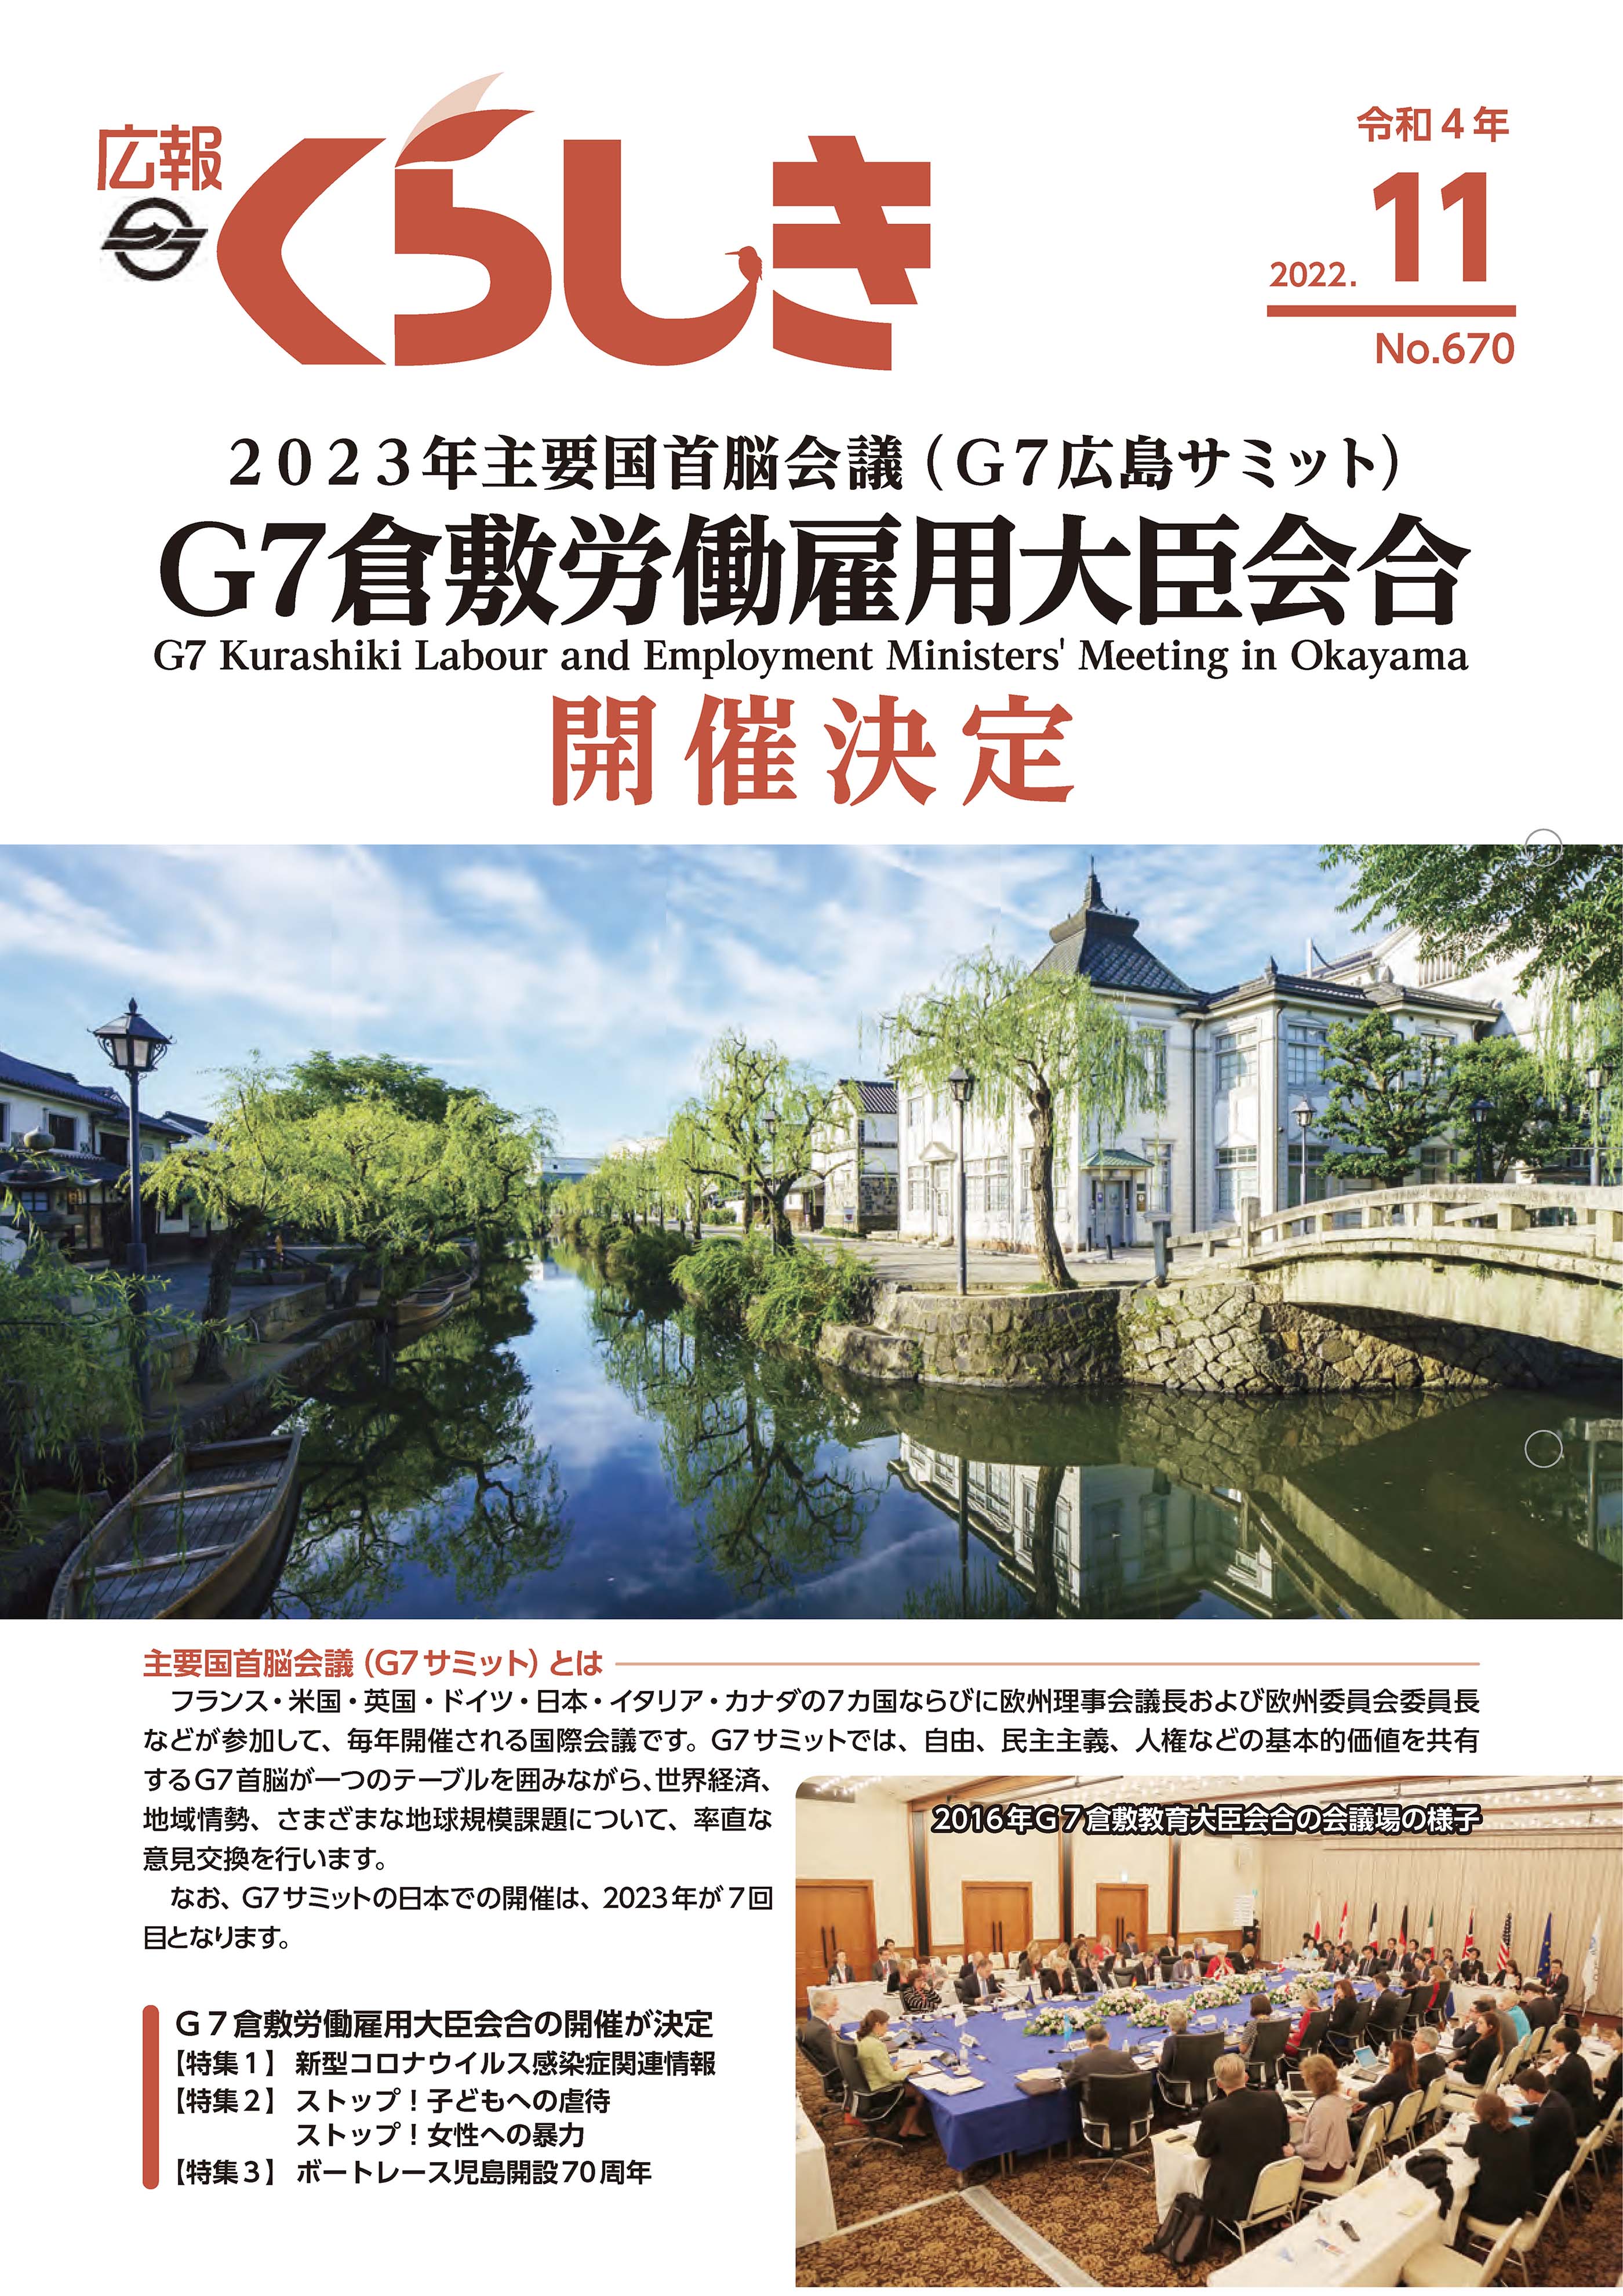 広報くらしき11月号の表紙。倉敷館と倉敷川湖畔の写真。電子ブックが開きます。